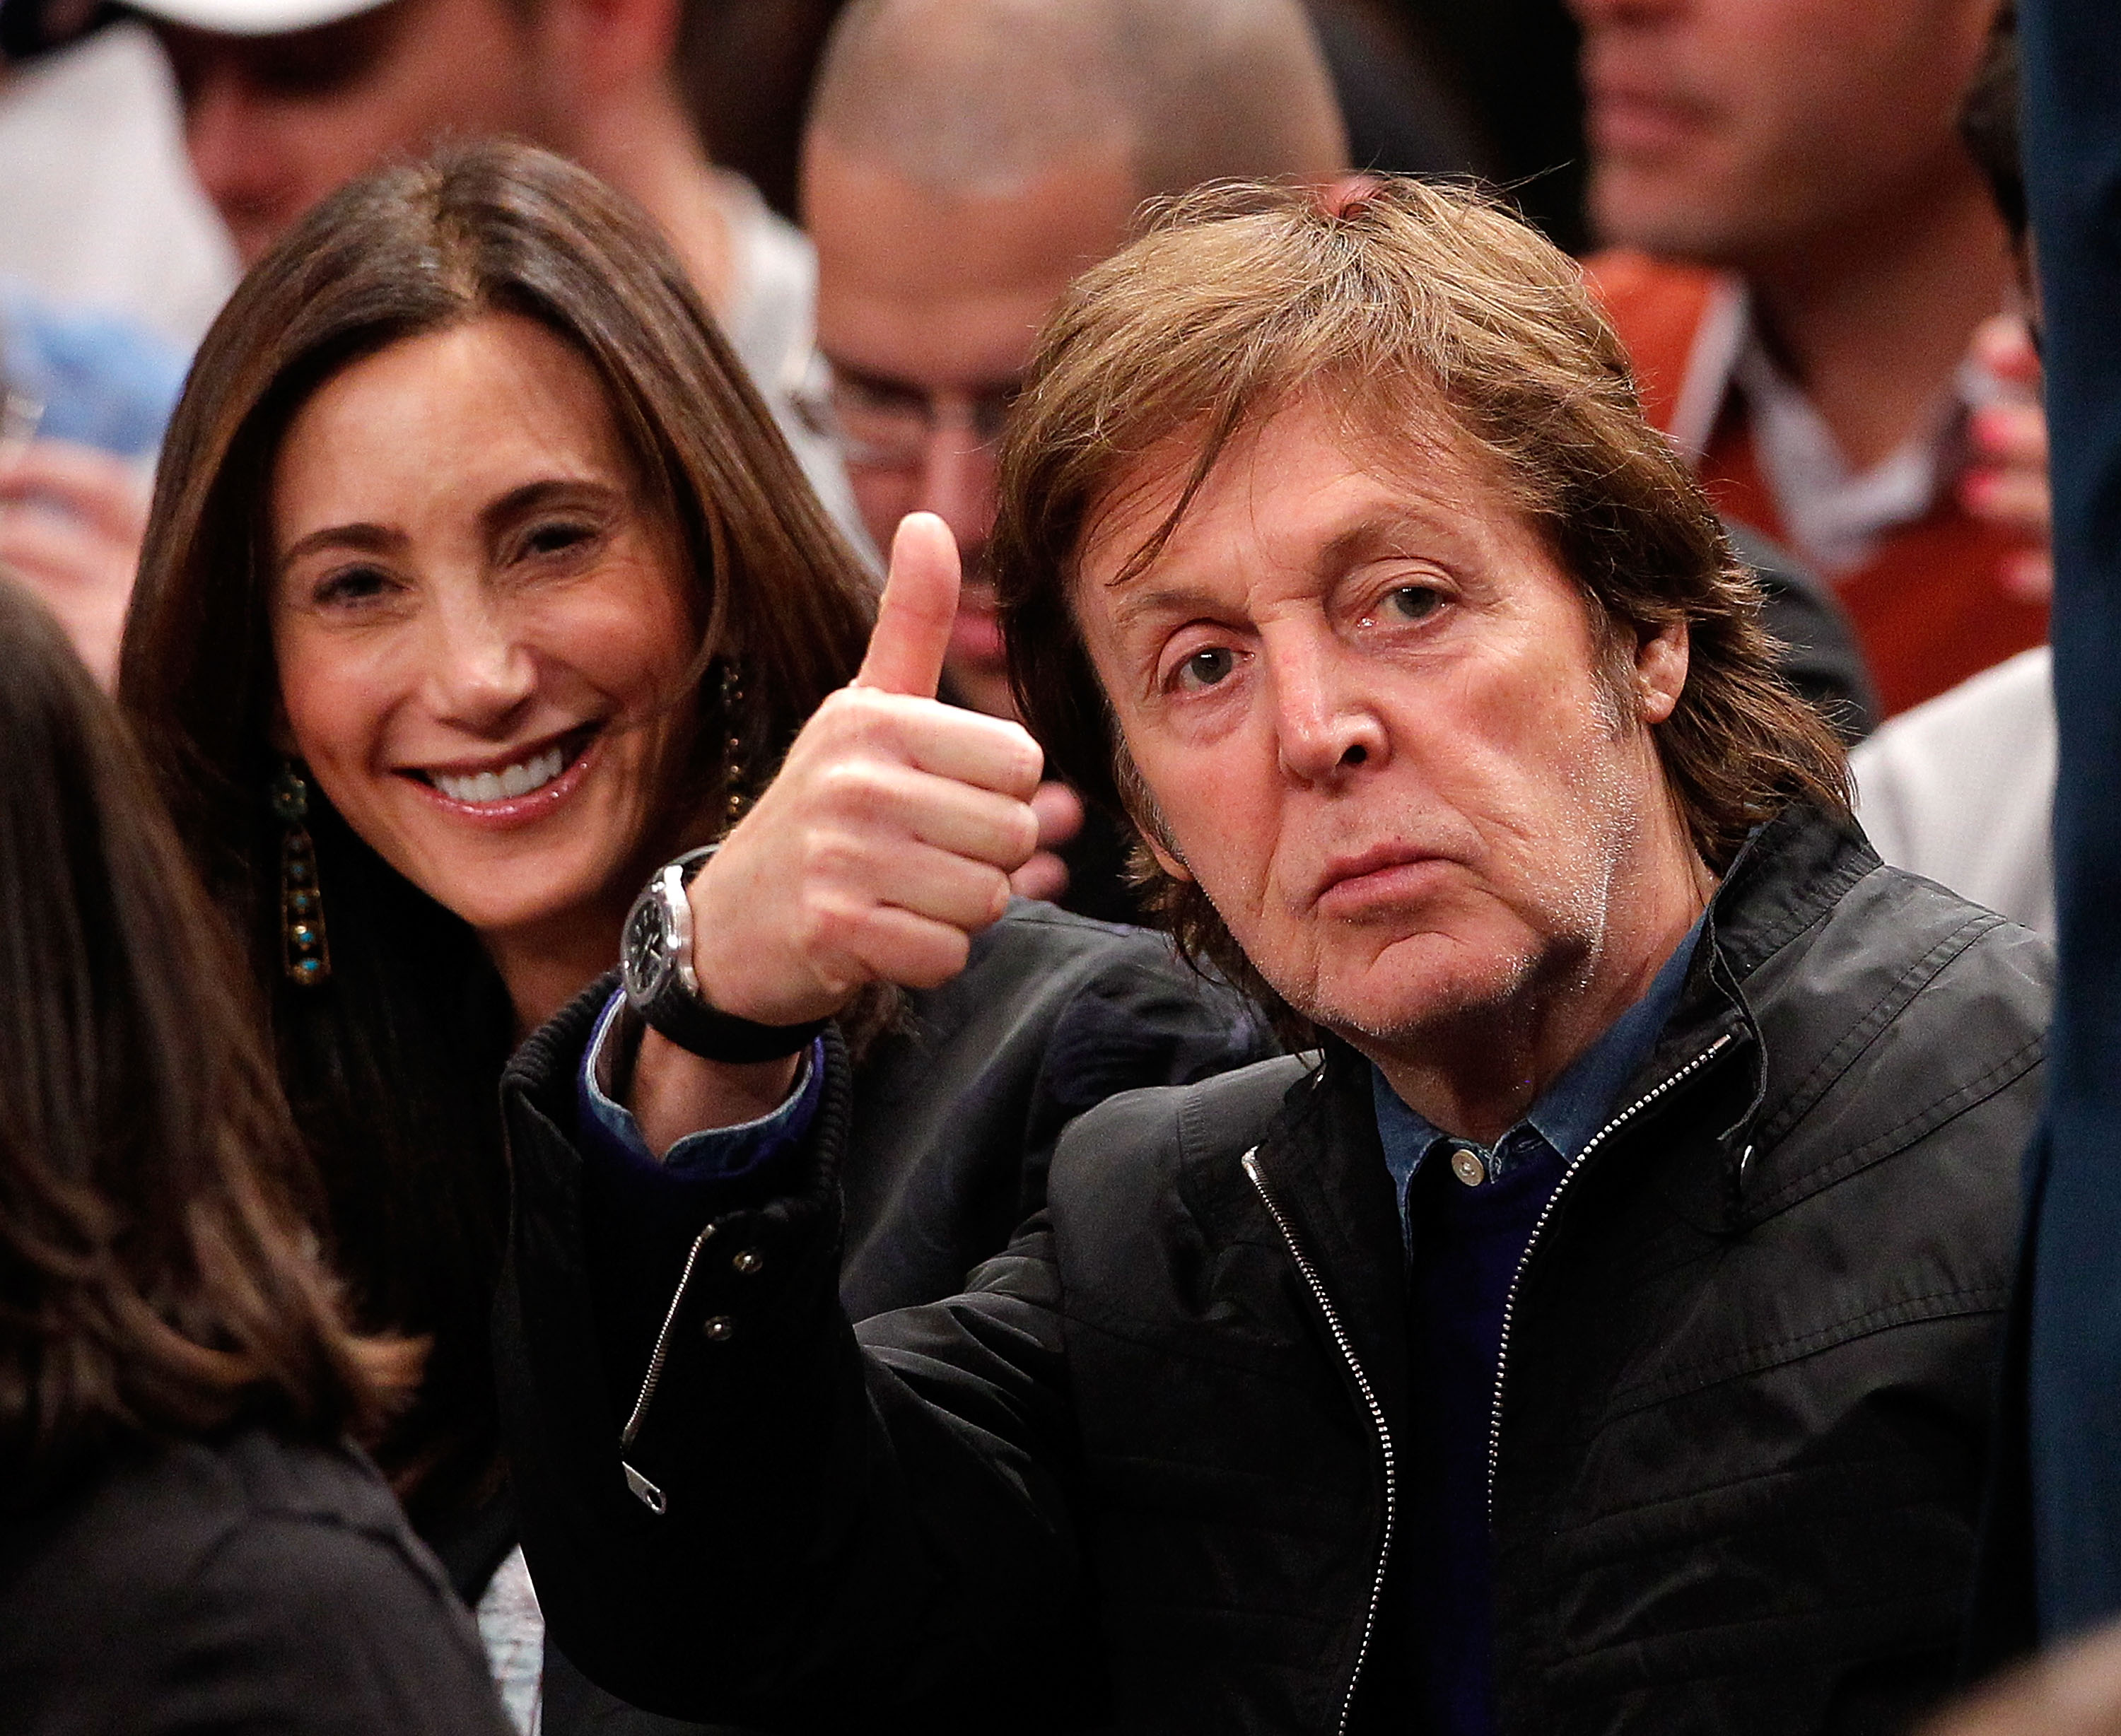 Paul McCartney saluda a los aficionados mientras su esposa Nancy Shevell sonríe durante un partido de baloncesto de la NBA en el Madison Square Garden de Nueva York, el 17 de febrero de 2012. | Fuente: Getty Images